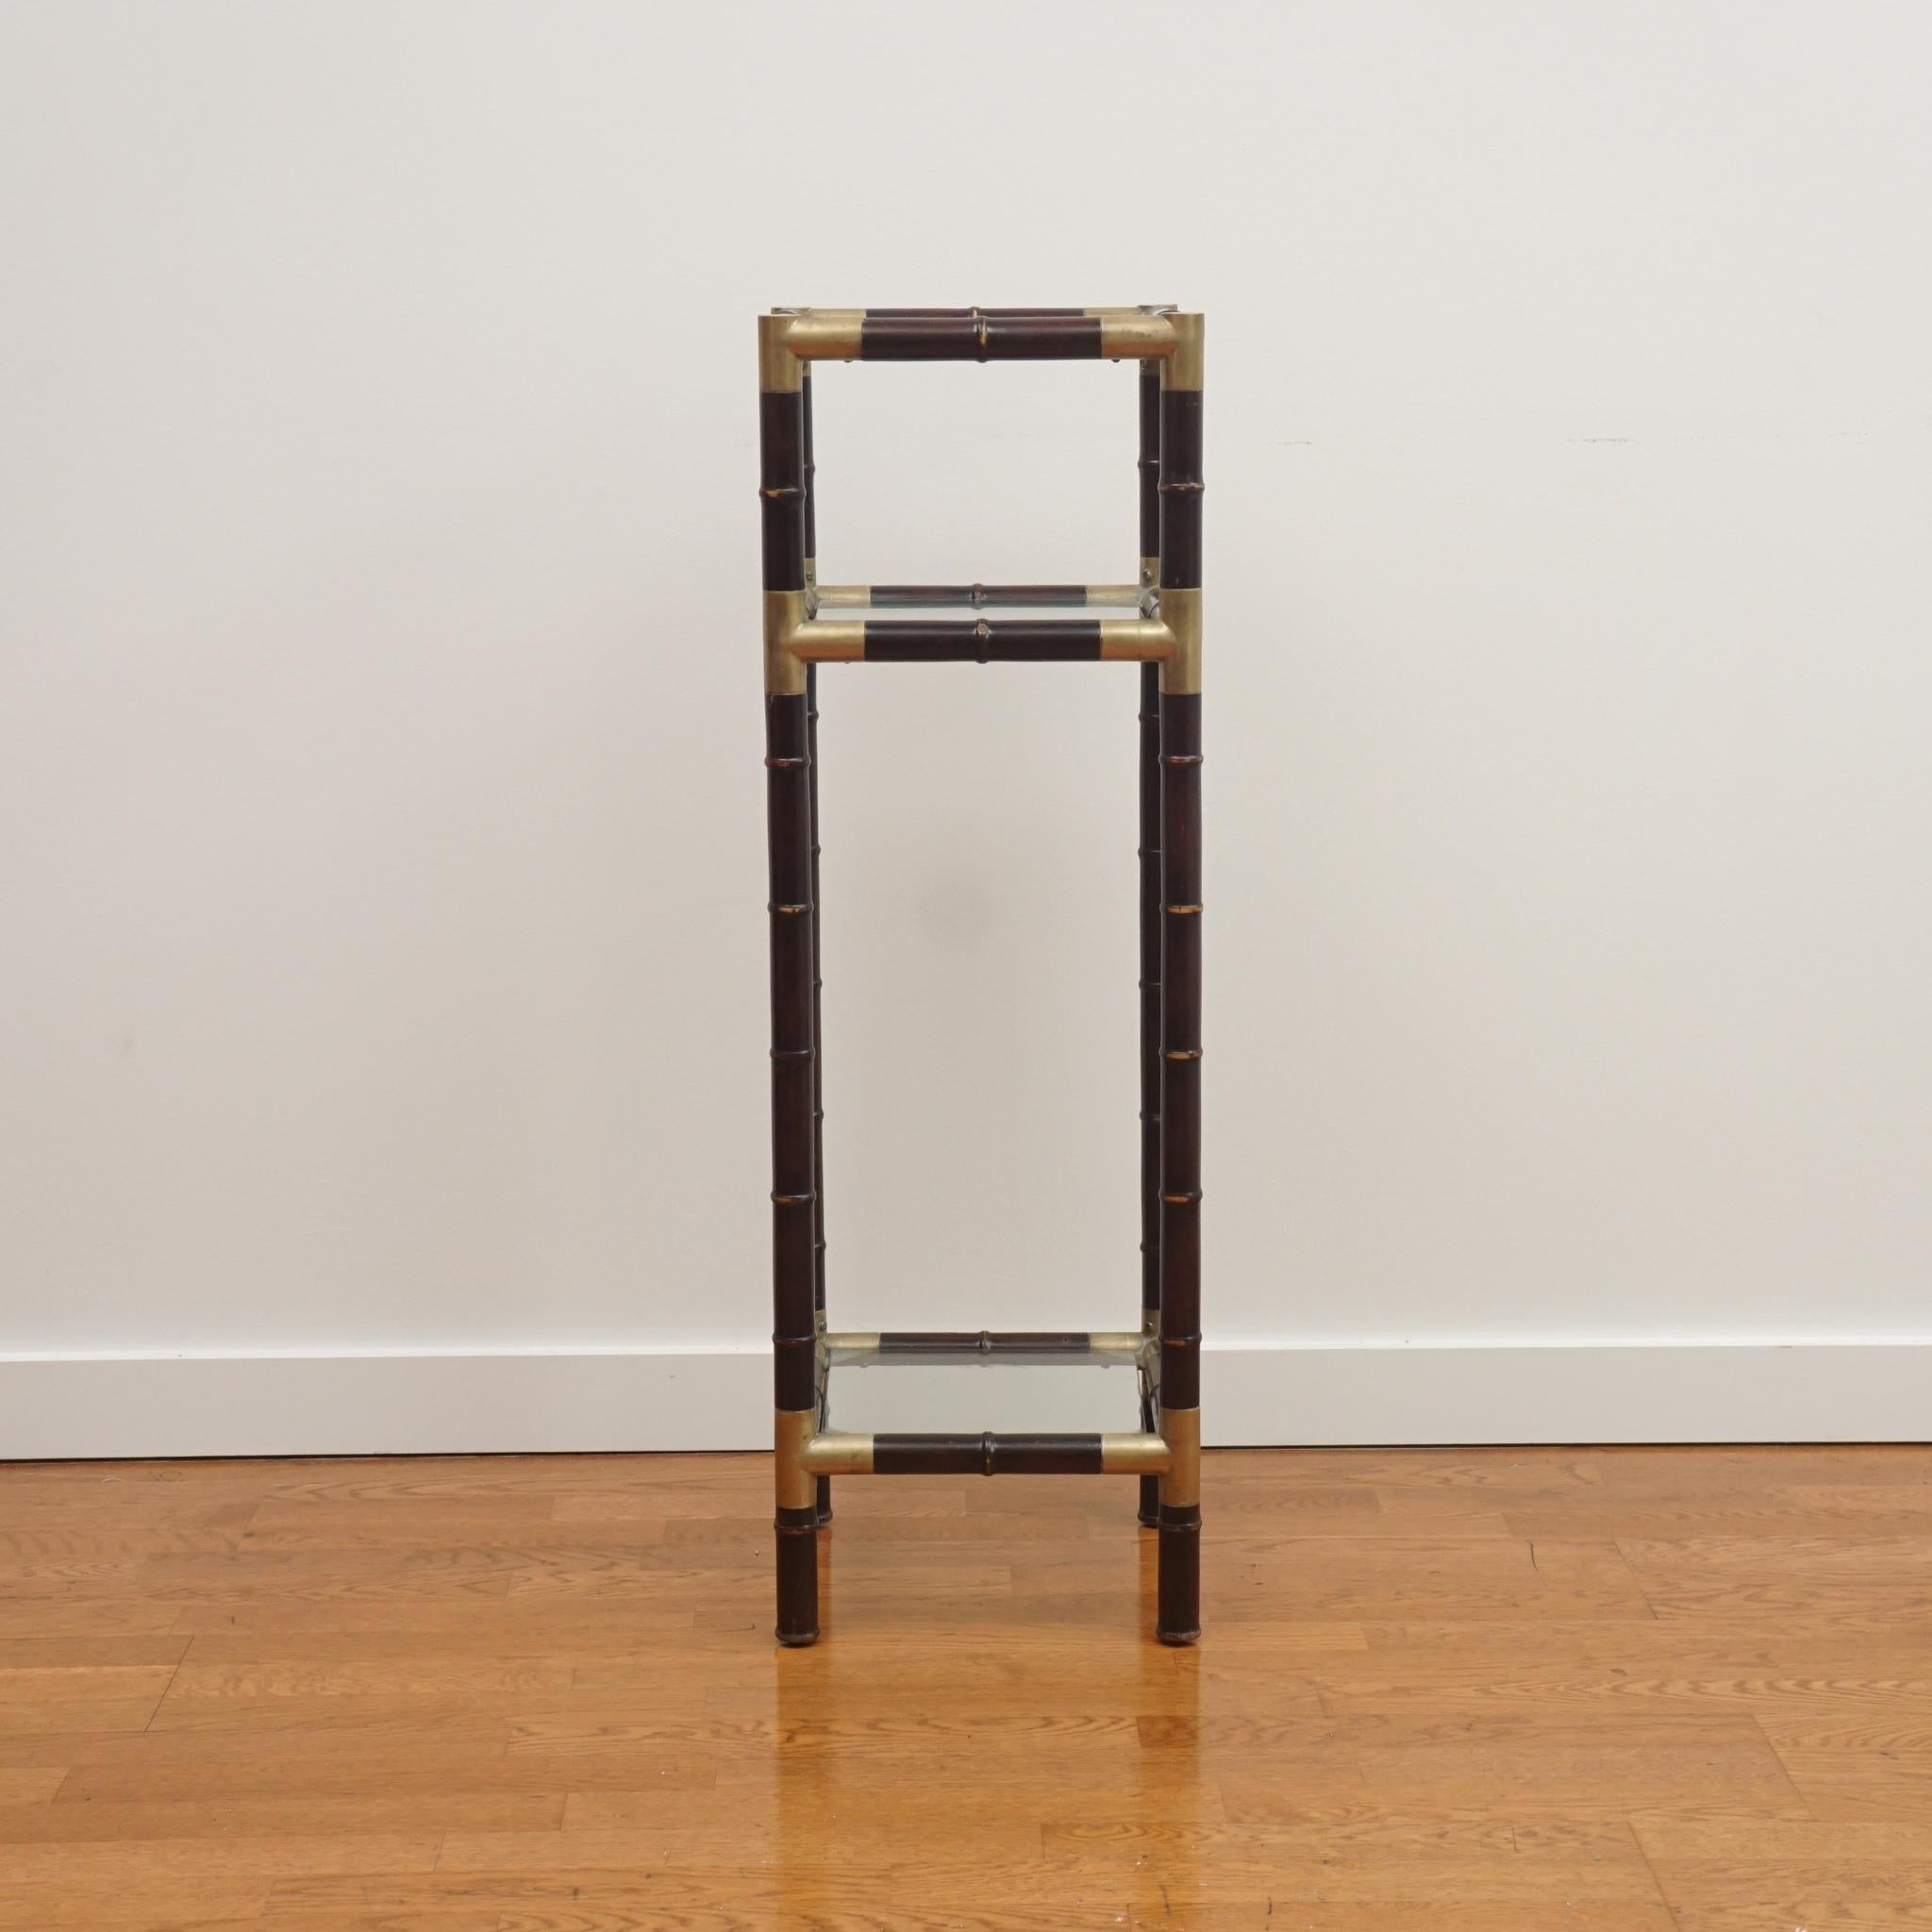 Der hier abgebildete Sockeltisch aus Bambusimitat ist ein Klassiker.  Der aus Mahagoni gefertigte Sockeltisch ist mit drei quadratischen Glasablagen ausgestattet.  Der dunkel gebeizte Rahmen aus Bambusimitat wird durch Eckteile und Gelenke aus